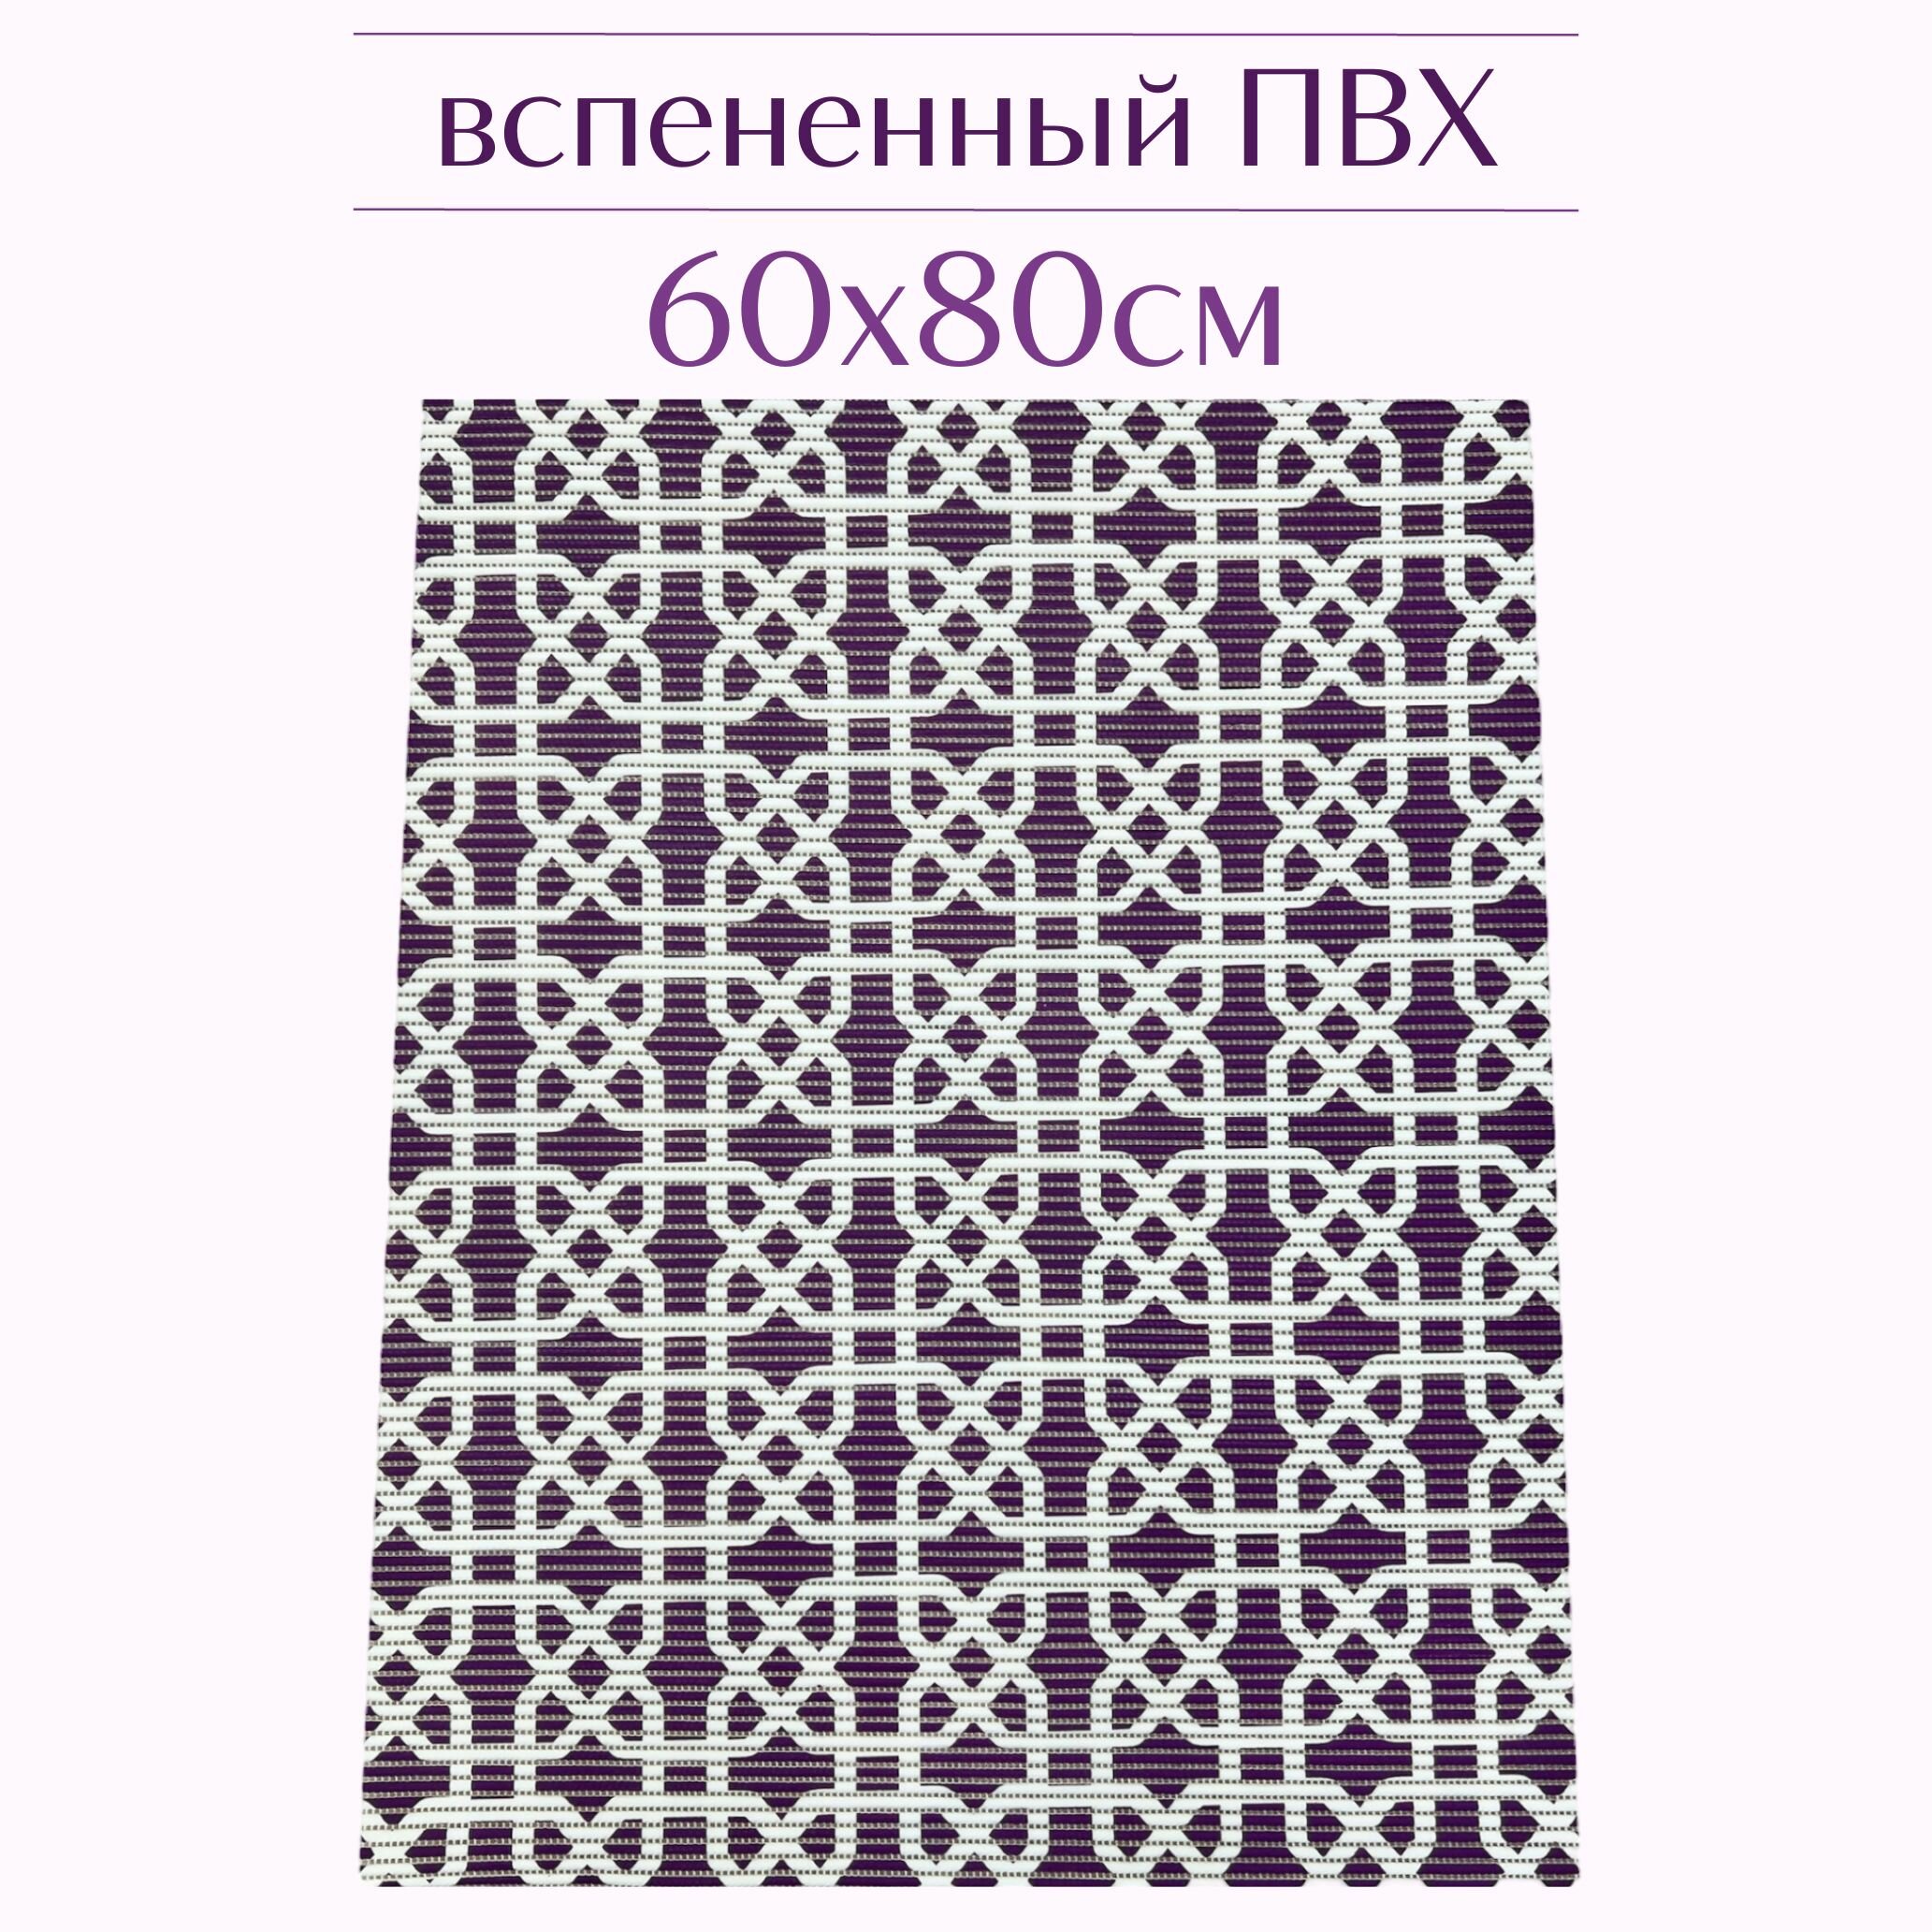 Напольный коврик для ванной из вспененного ПВХ 80x60 см темно-фиолетовый/белый с рисунком